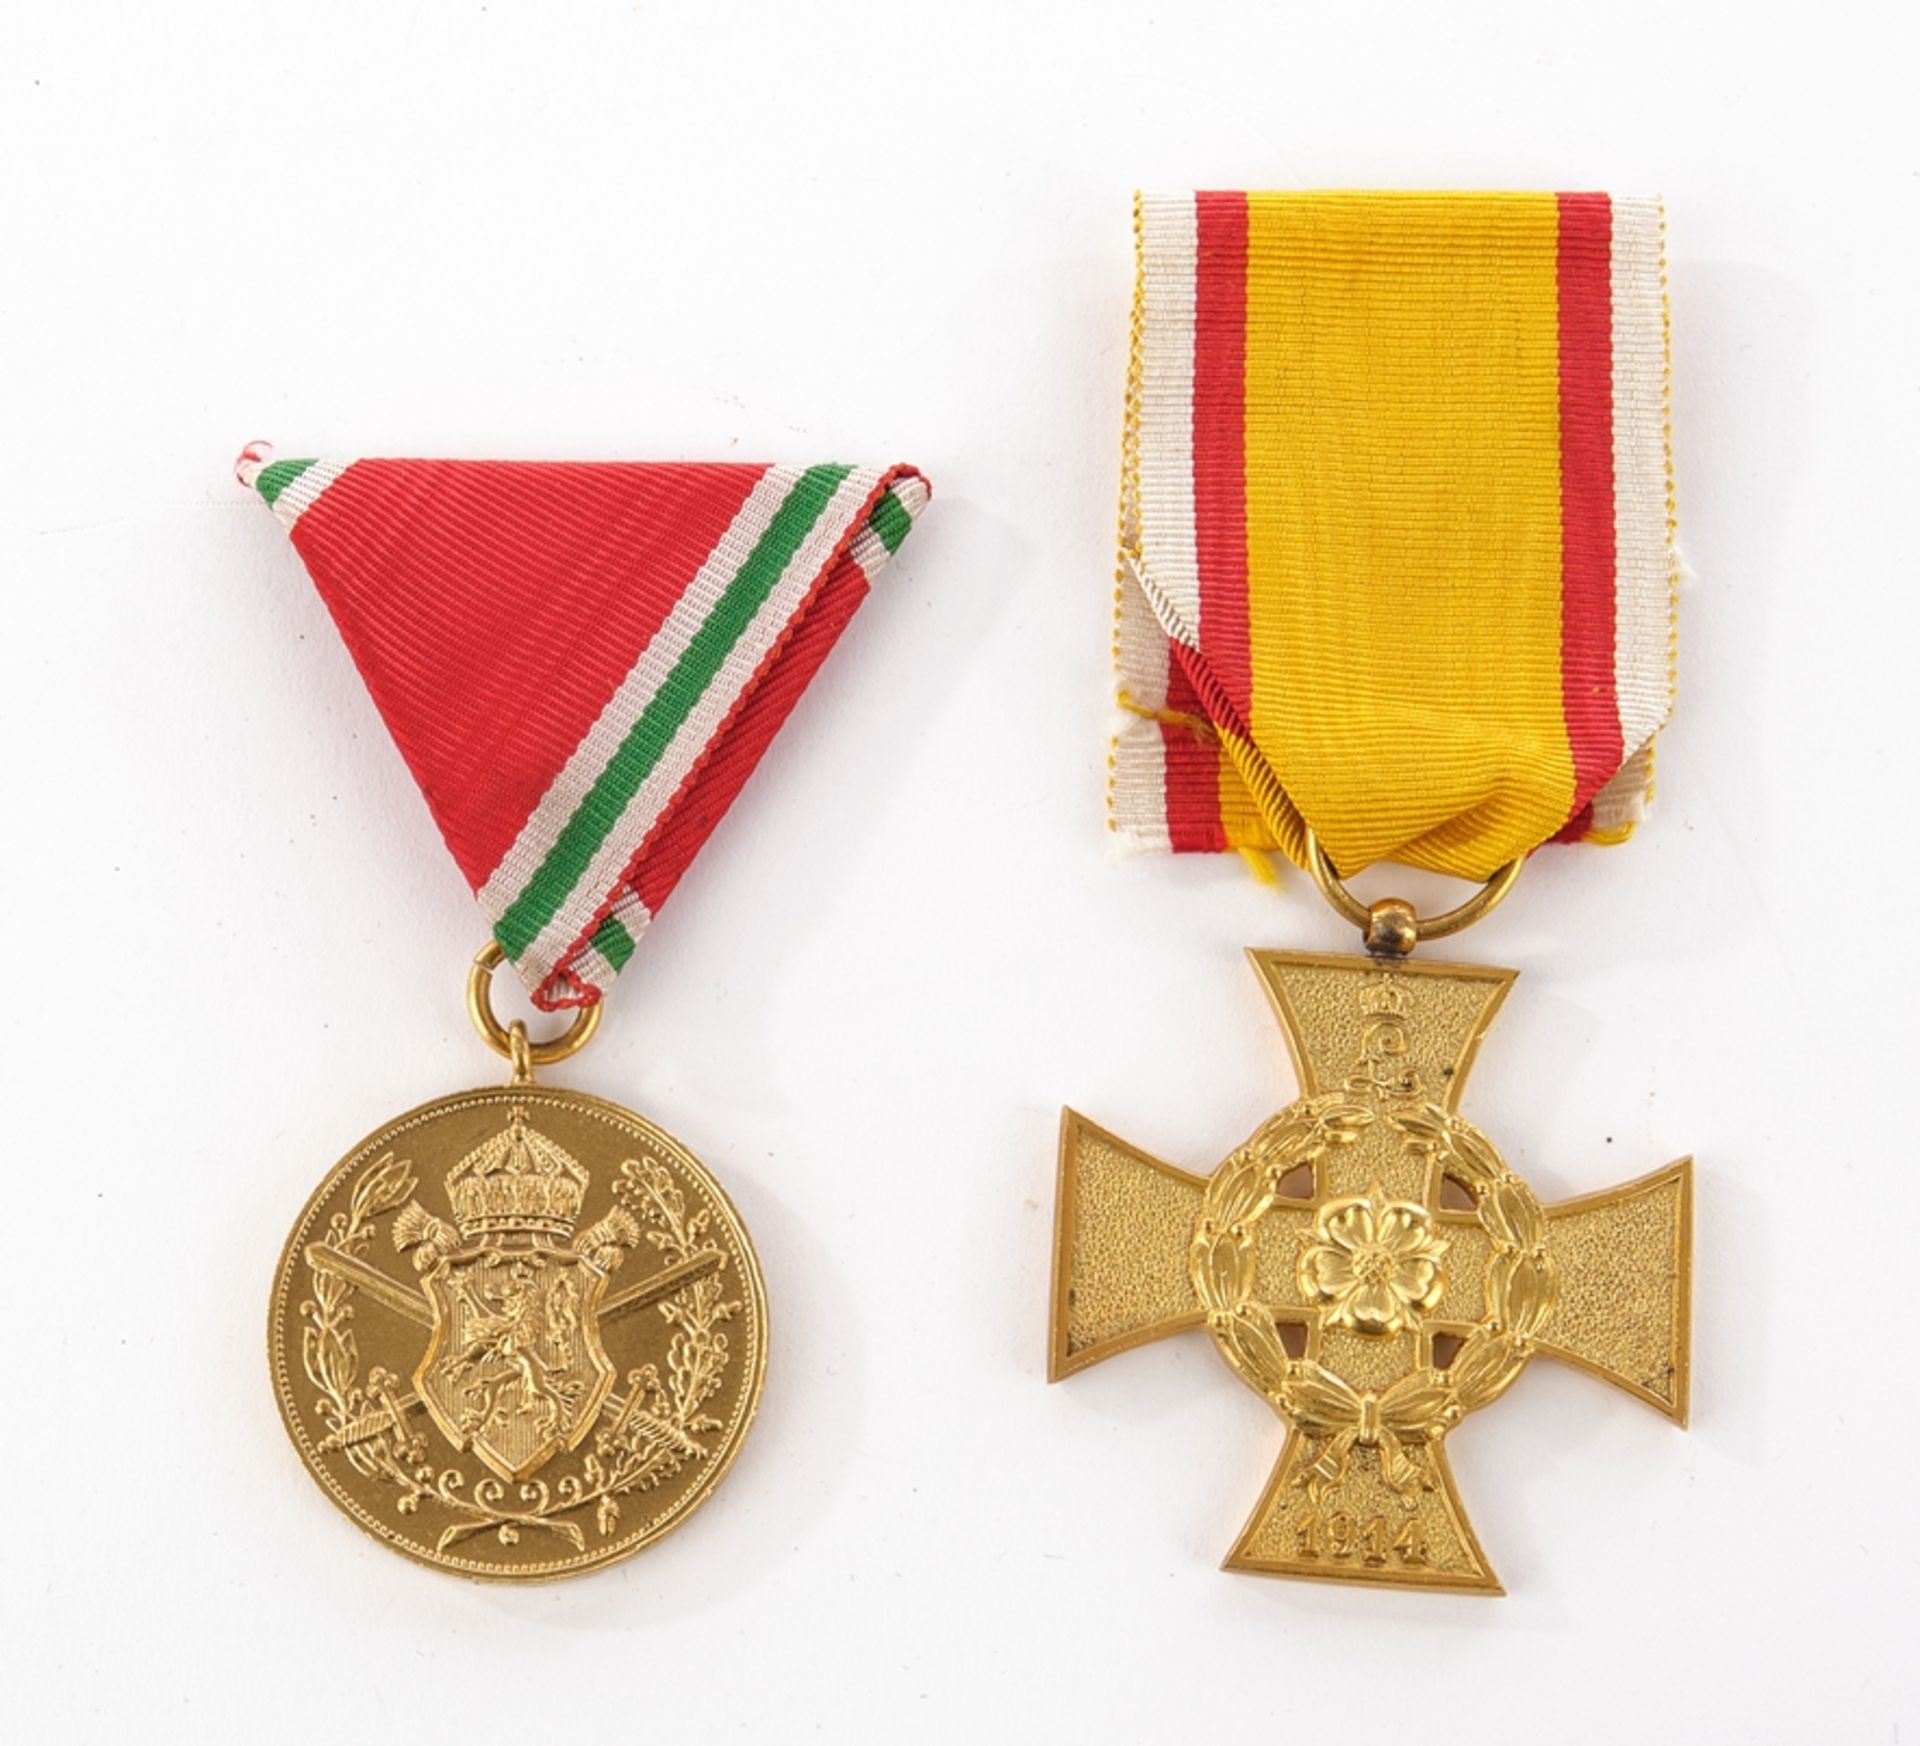 Fürstlich Lippisches Kriegsverdienstkreuz, 1914, Bronze vergoldet, am gold-rot-weißen Band, mit ori